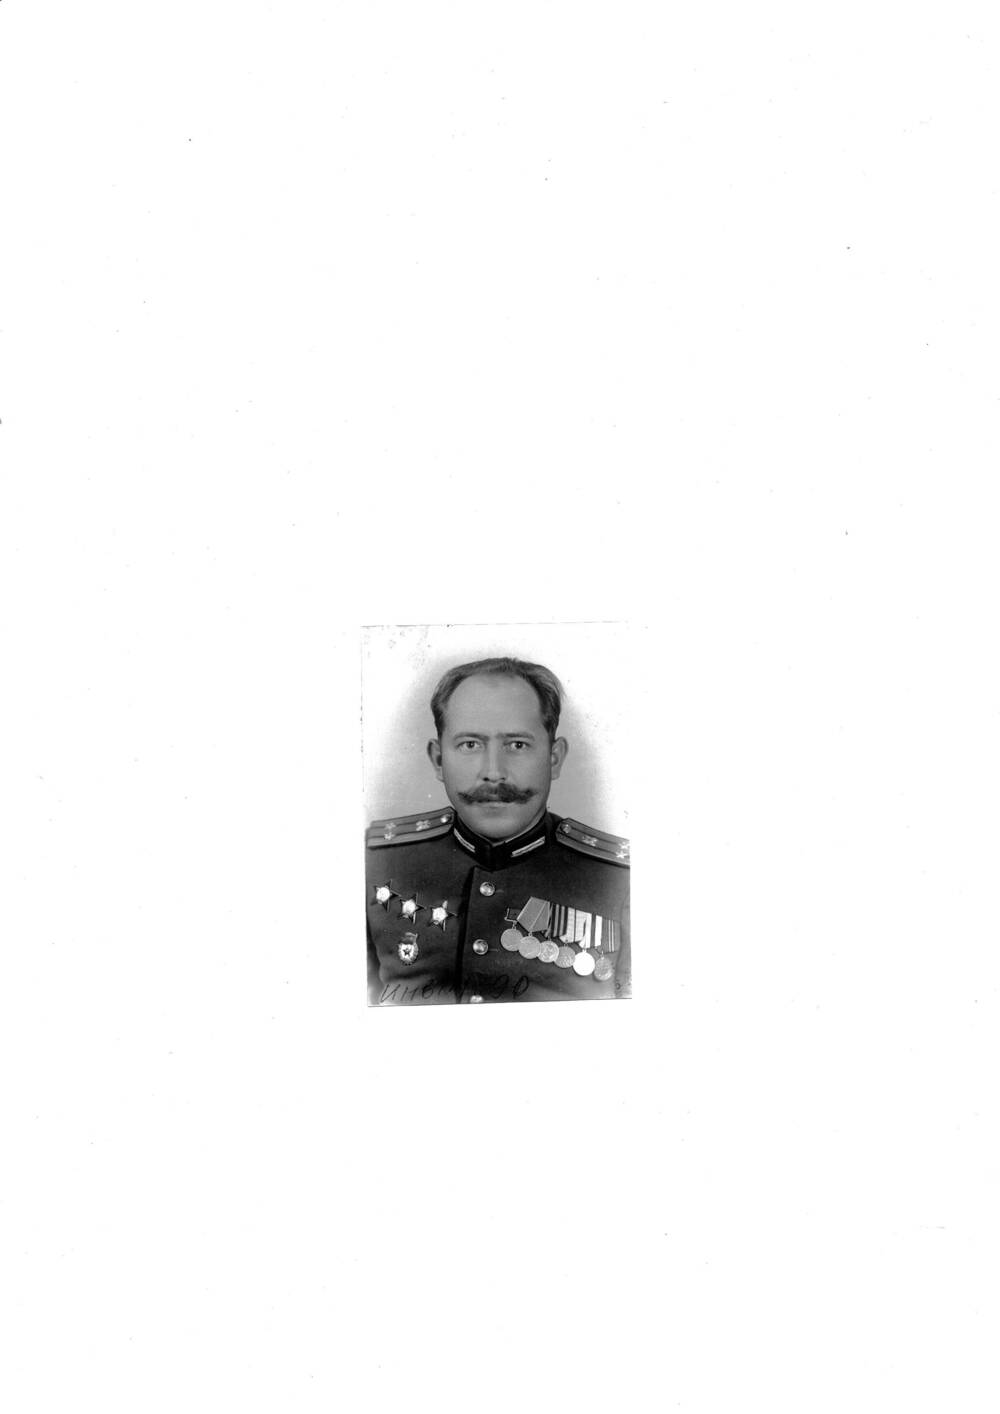 Фото черно-белое, погрудное Махина А. Н. – уроженца г. Калача, участника Сталинградской битвы. Г. Калач-на-Дону , 1960